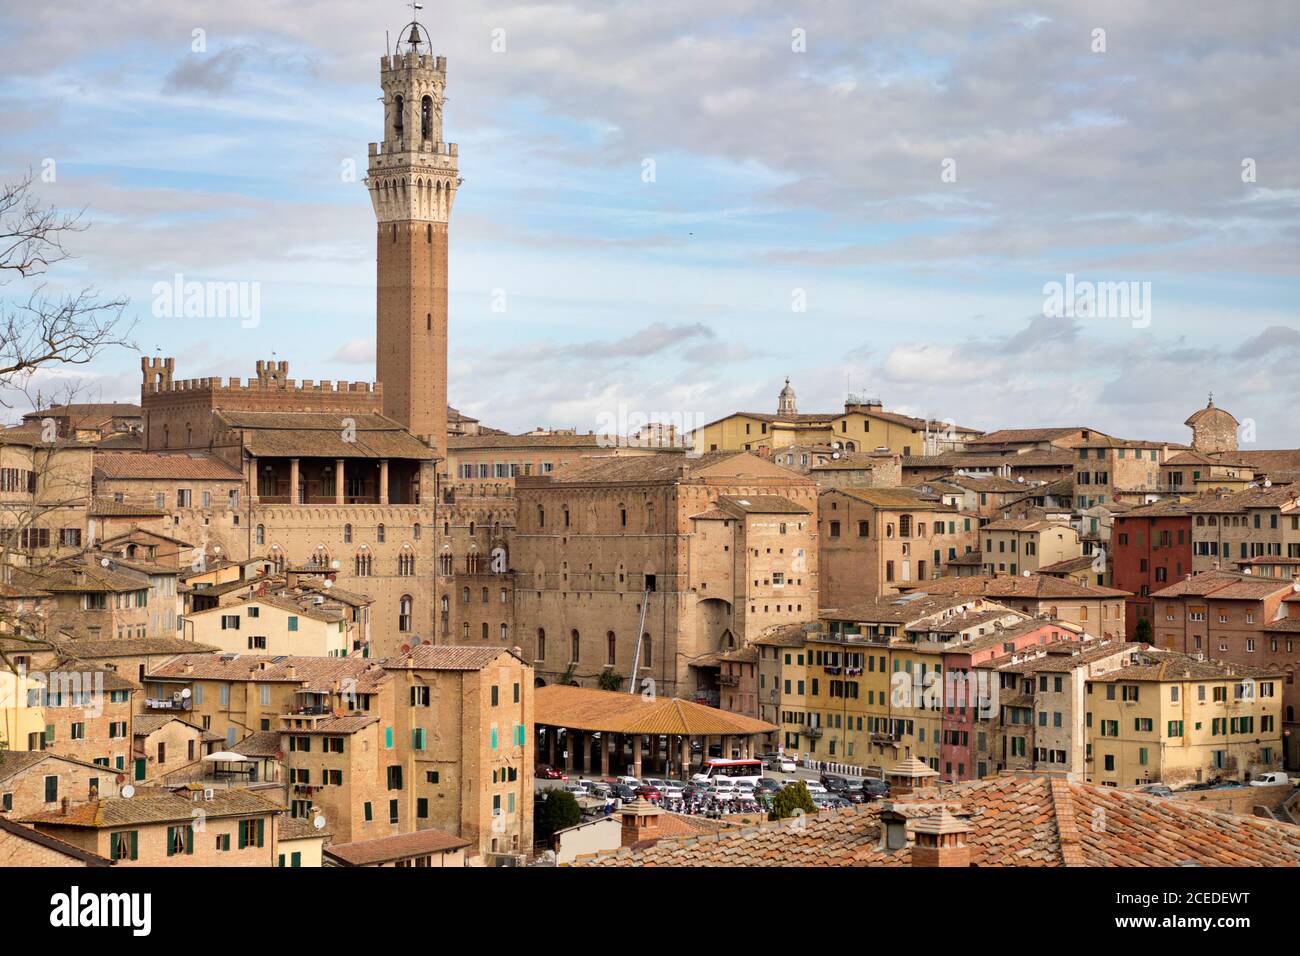 Sienne, Toscane, Italie, 07 mars 2019 : vue panoramique sur la ville et la Tour Mangia Banque D'Images